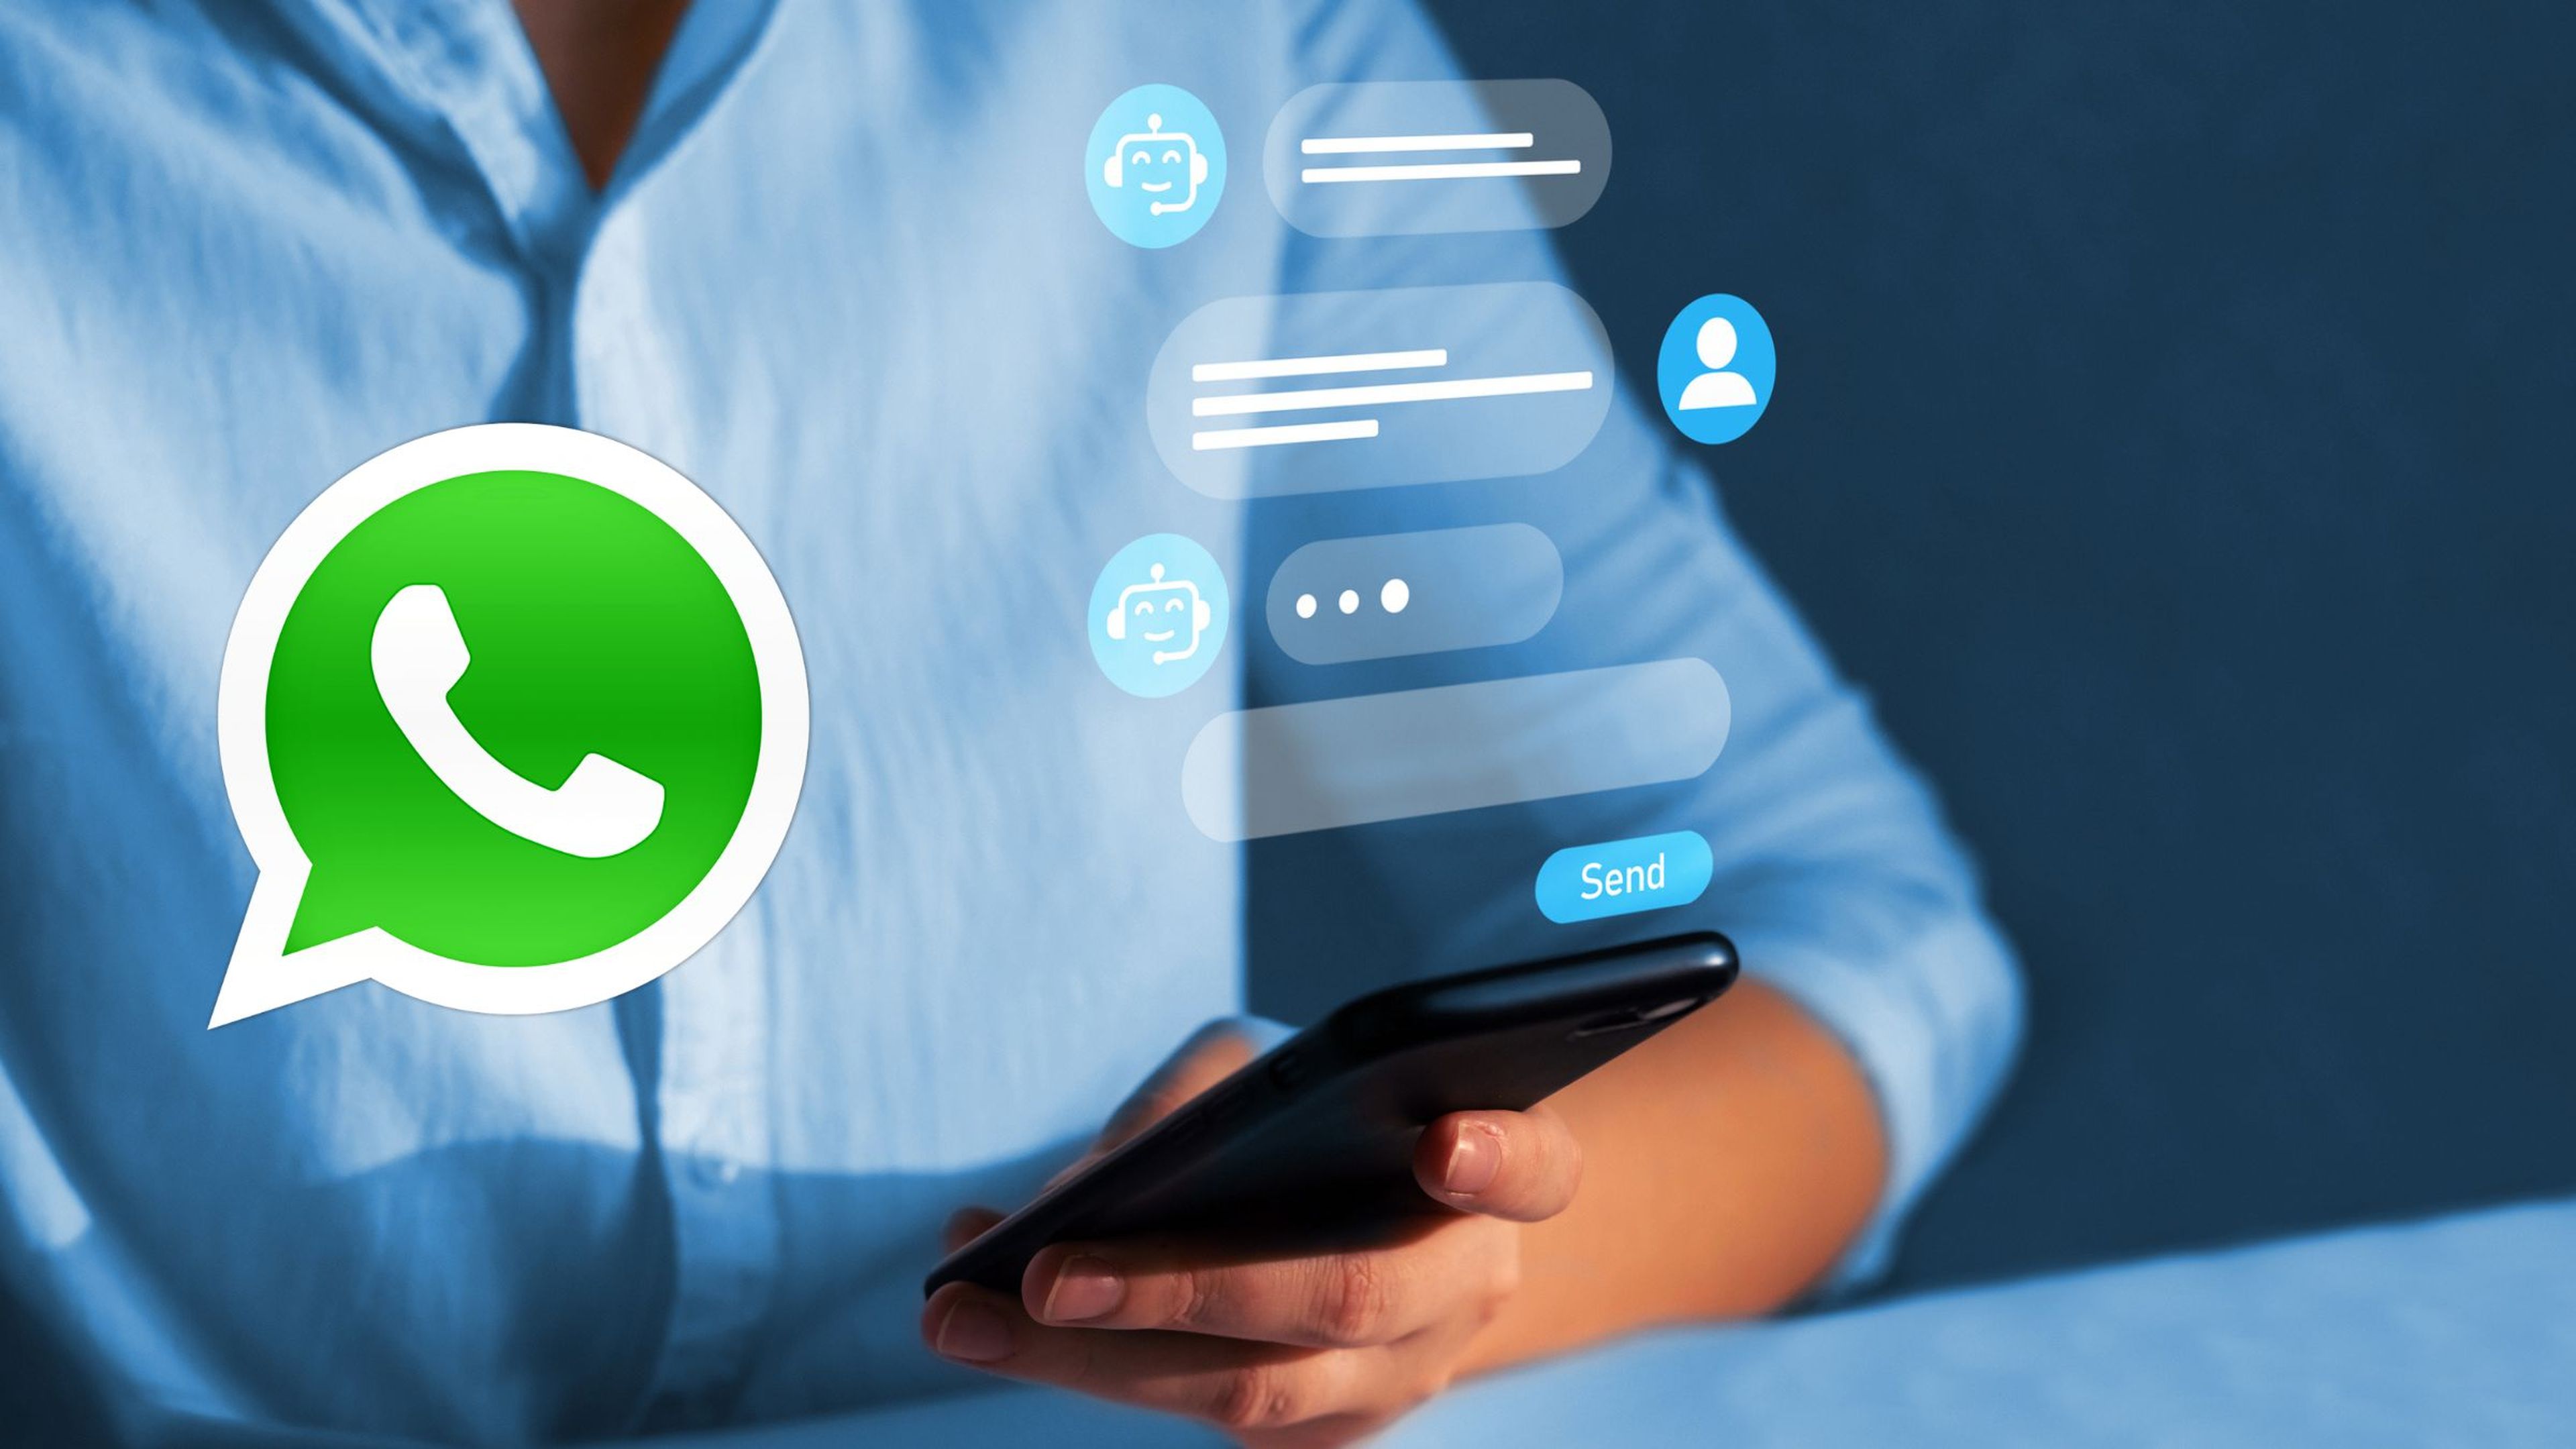 Whatsapp apuesta fuerte por la IA, incluso en el soporte técnico